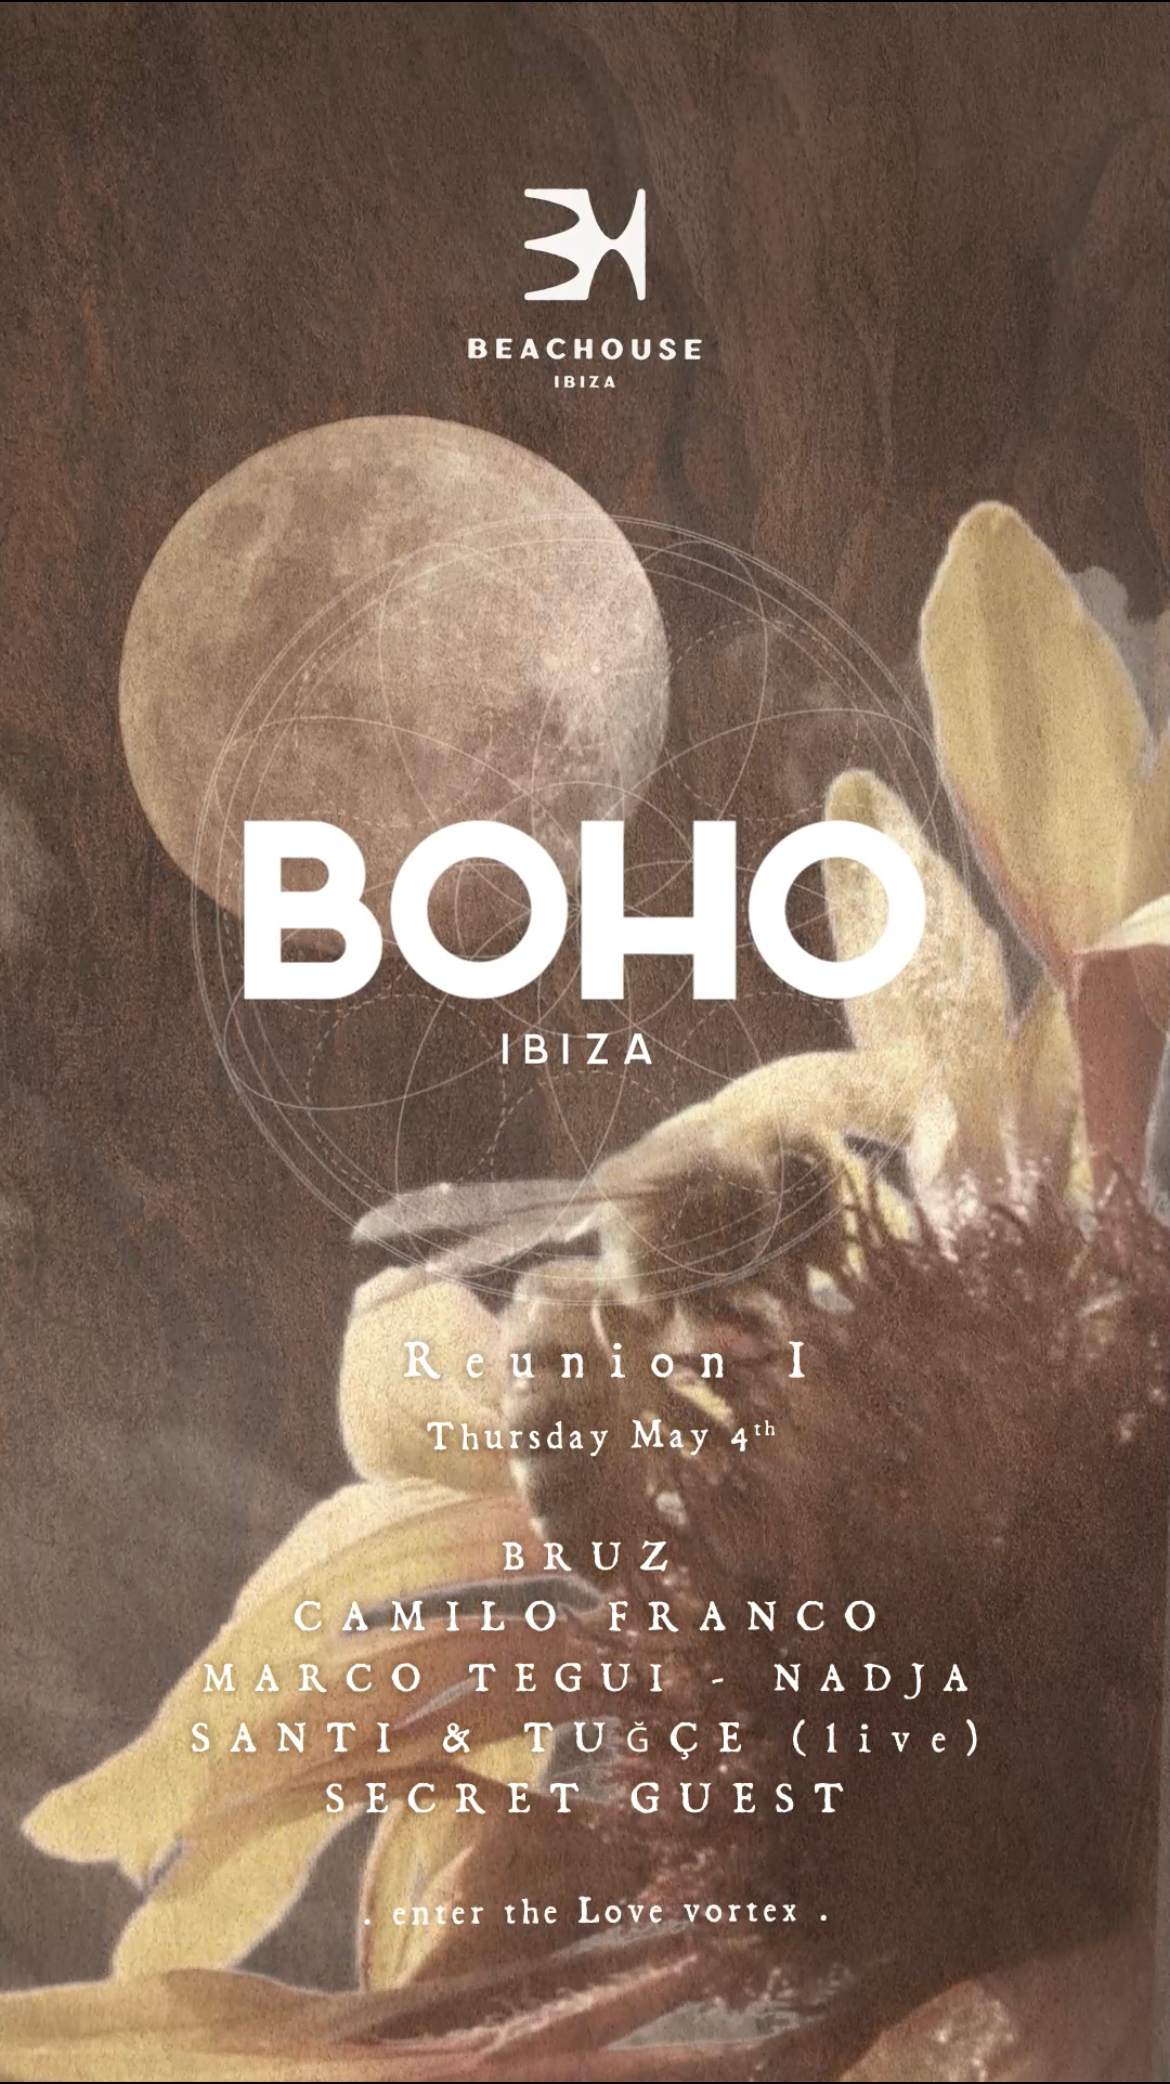 BOHO Experience Ibiza - Reunion I - Página frontal